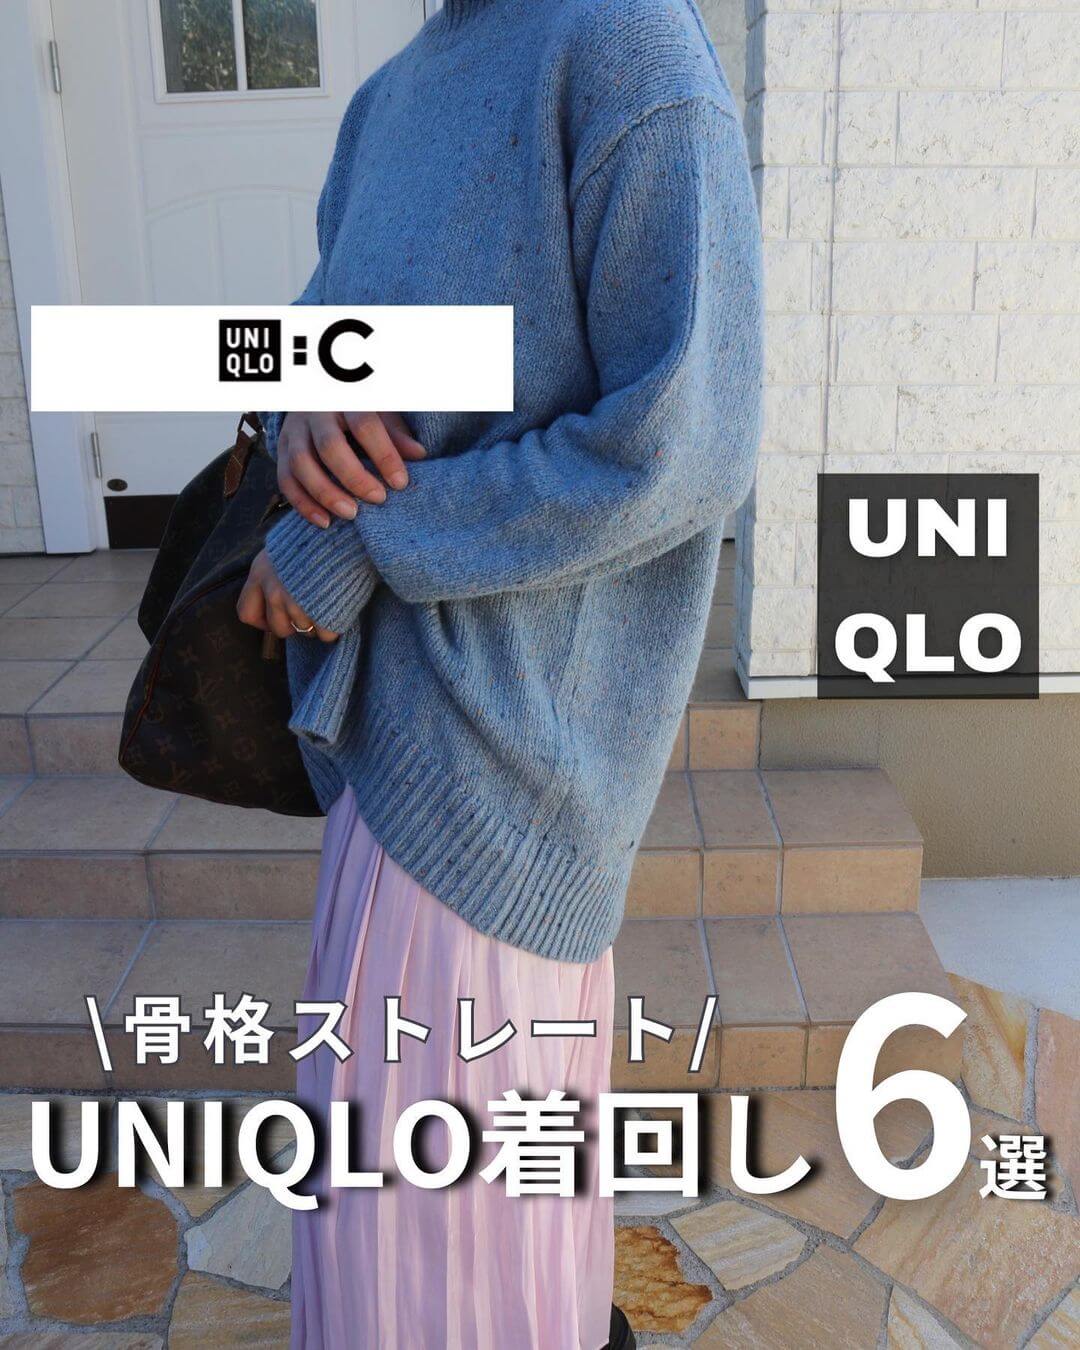 UNIQLOユニクロ メンズニット(薄手) Sサイズ 人気アイテム - トップス